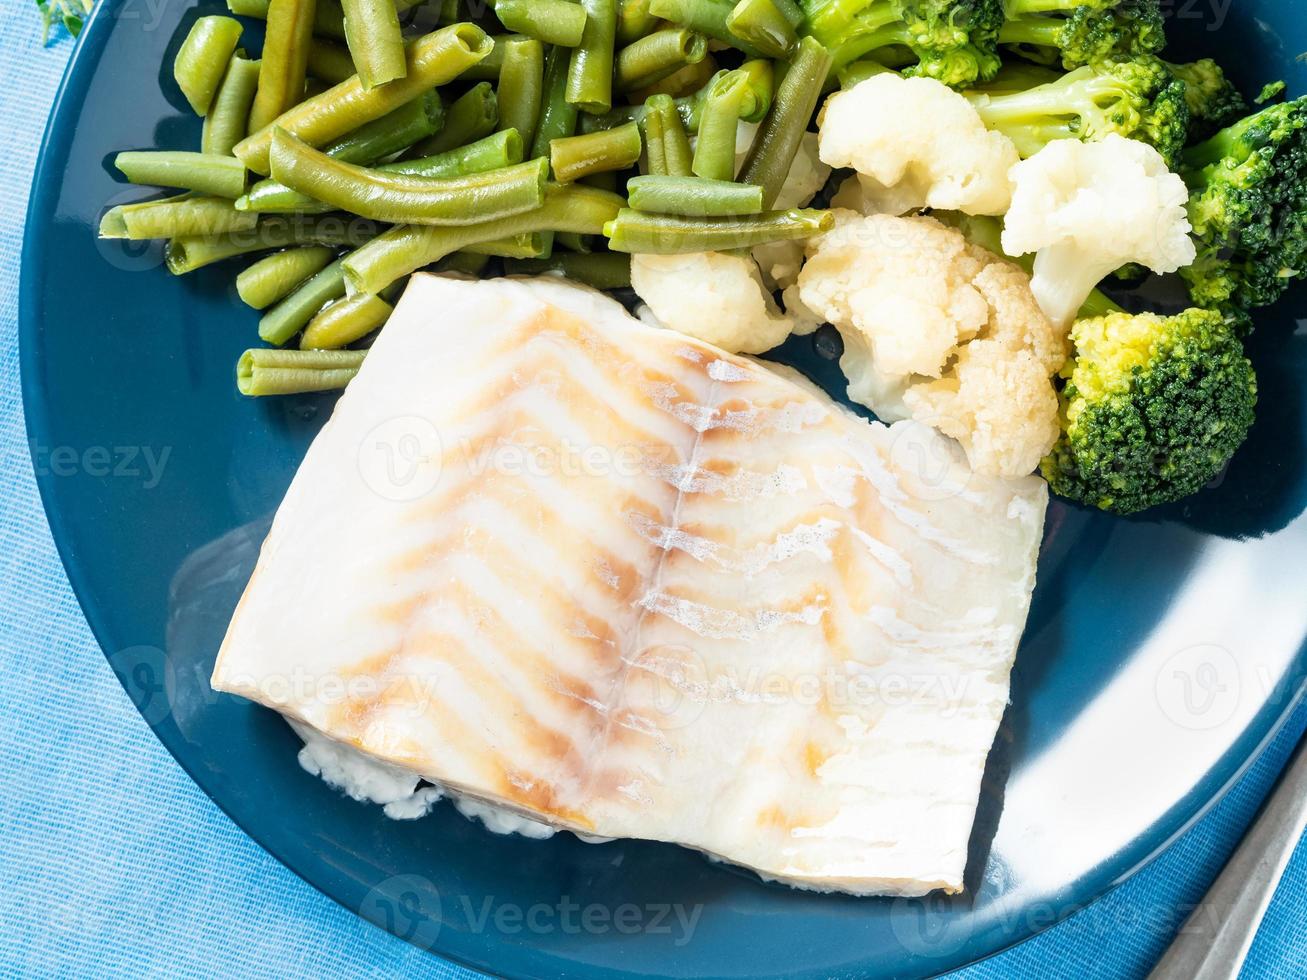 filetto di merluzzo ai frutti di mare al vapore con verdure su un piatto blu, vista dall'alto, primo piano. cibo dietetico sano per una corretta alimentazione foto